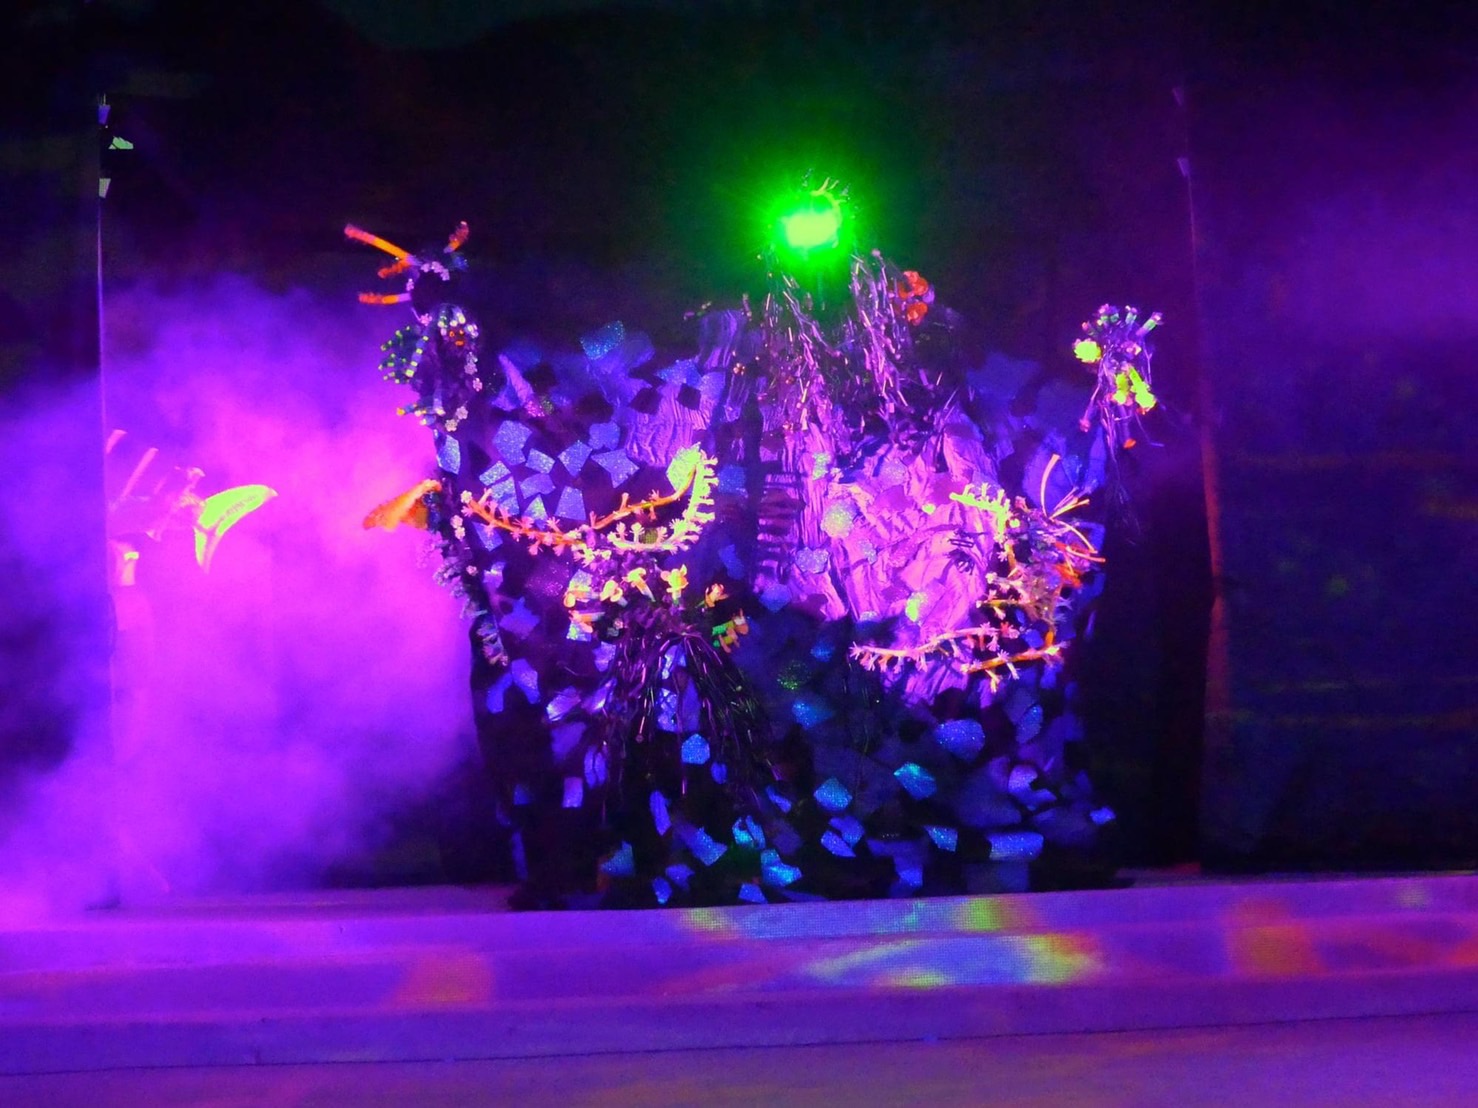 VK.Vich Vichayut Kanungchoti วิชยุตม์ คนึงโชติ มายากล รับแสดงมายากล Magic Class รับสอนมายากล มายากลเวที การแสดง Stage Magic แสดงวันเด็ก วันปีใหม่ ละครเวที ละครเวทีมายากล Joe Louis Theatre Puppet ผีเสื้ออัคนี การแสดงวัฒนธรรมไทยร่วมสมัย หุ่นเชิด